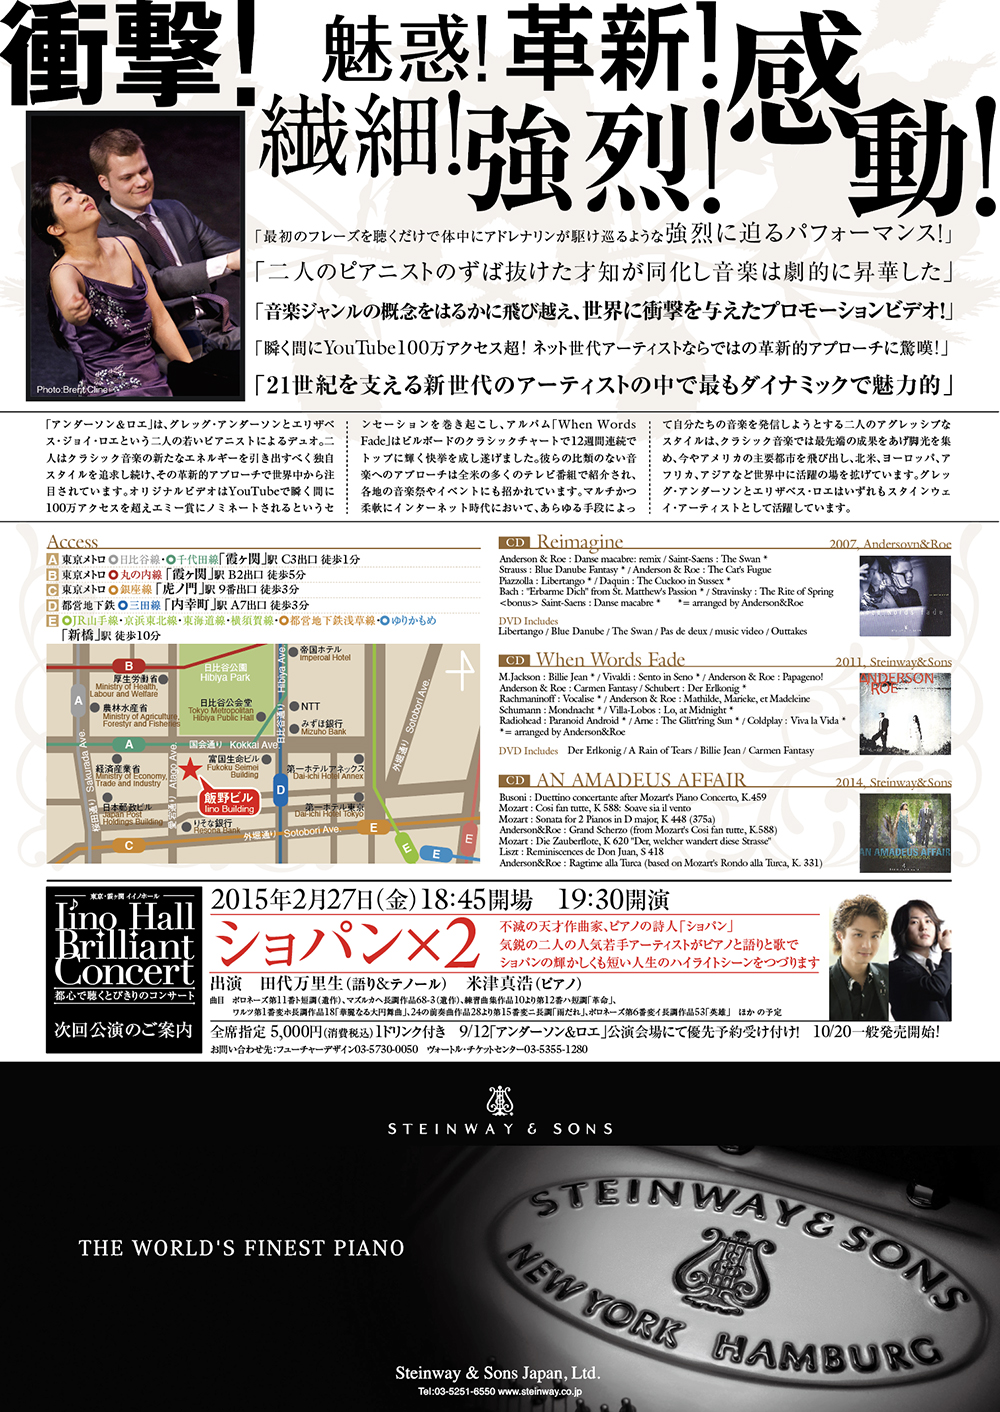 ピアノコンサート「アンダーソン&ロエ」チラシ　| 東京大田区のデザイン事務所SOOUKはイベントのフライヤーや会社／お店のロゴ・各種印刷物など広告制作を行っております。